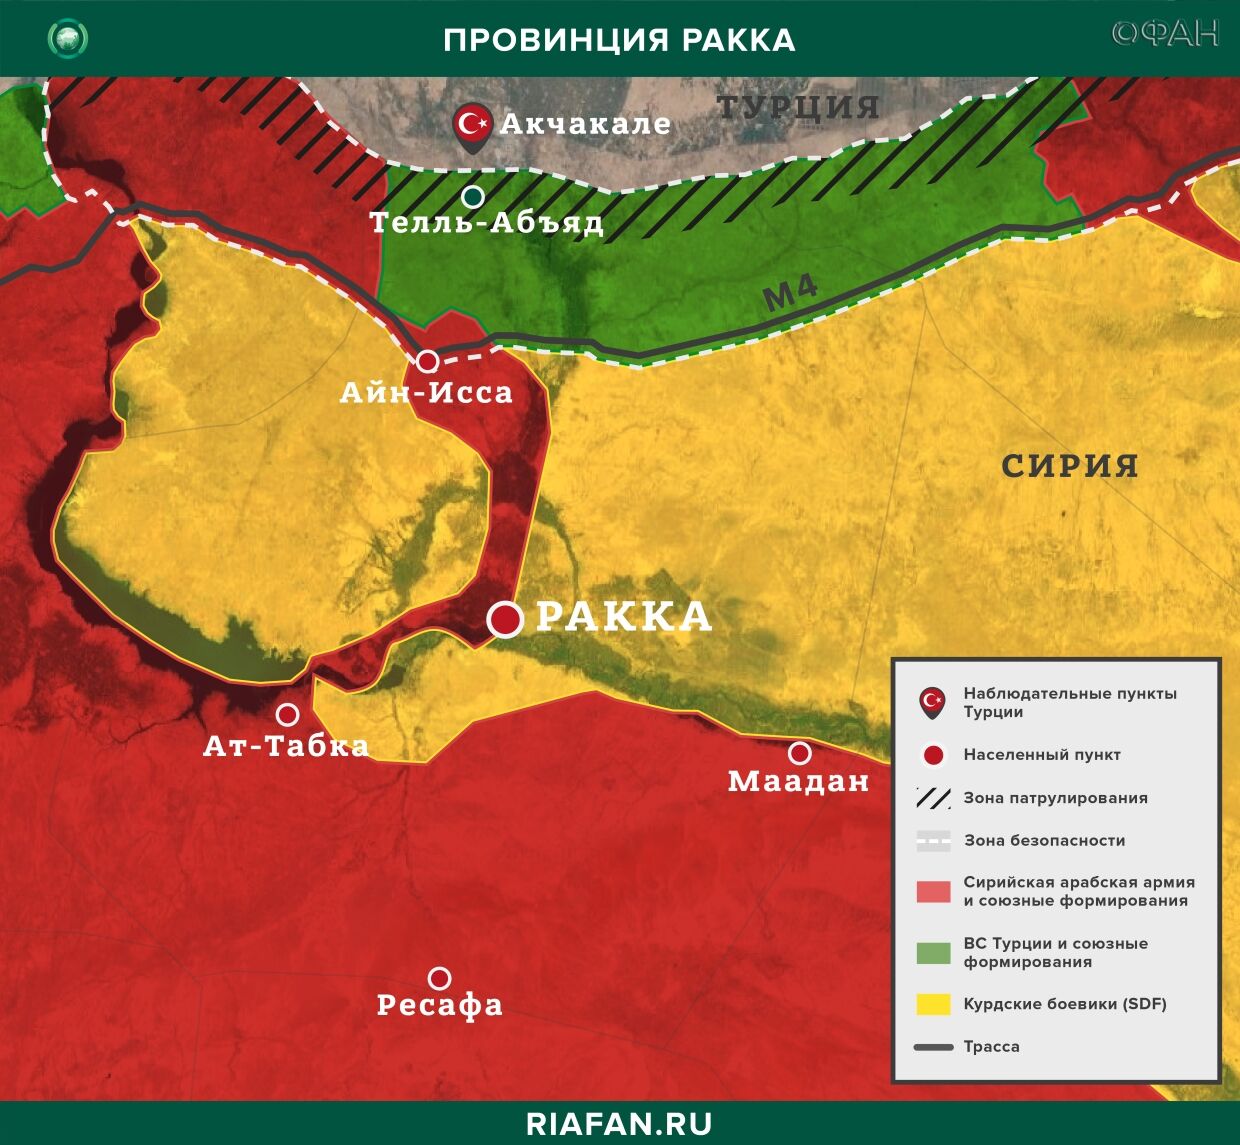 Сирия новости 29 июня 22.30: Турция сообщила о нейтрализации 41 члена РПК в Ираке, рейды SDF в Аш-Шаддади